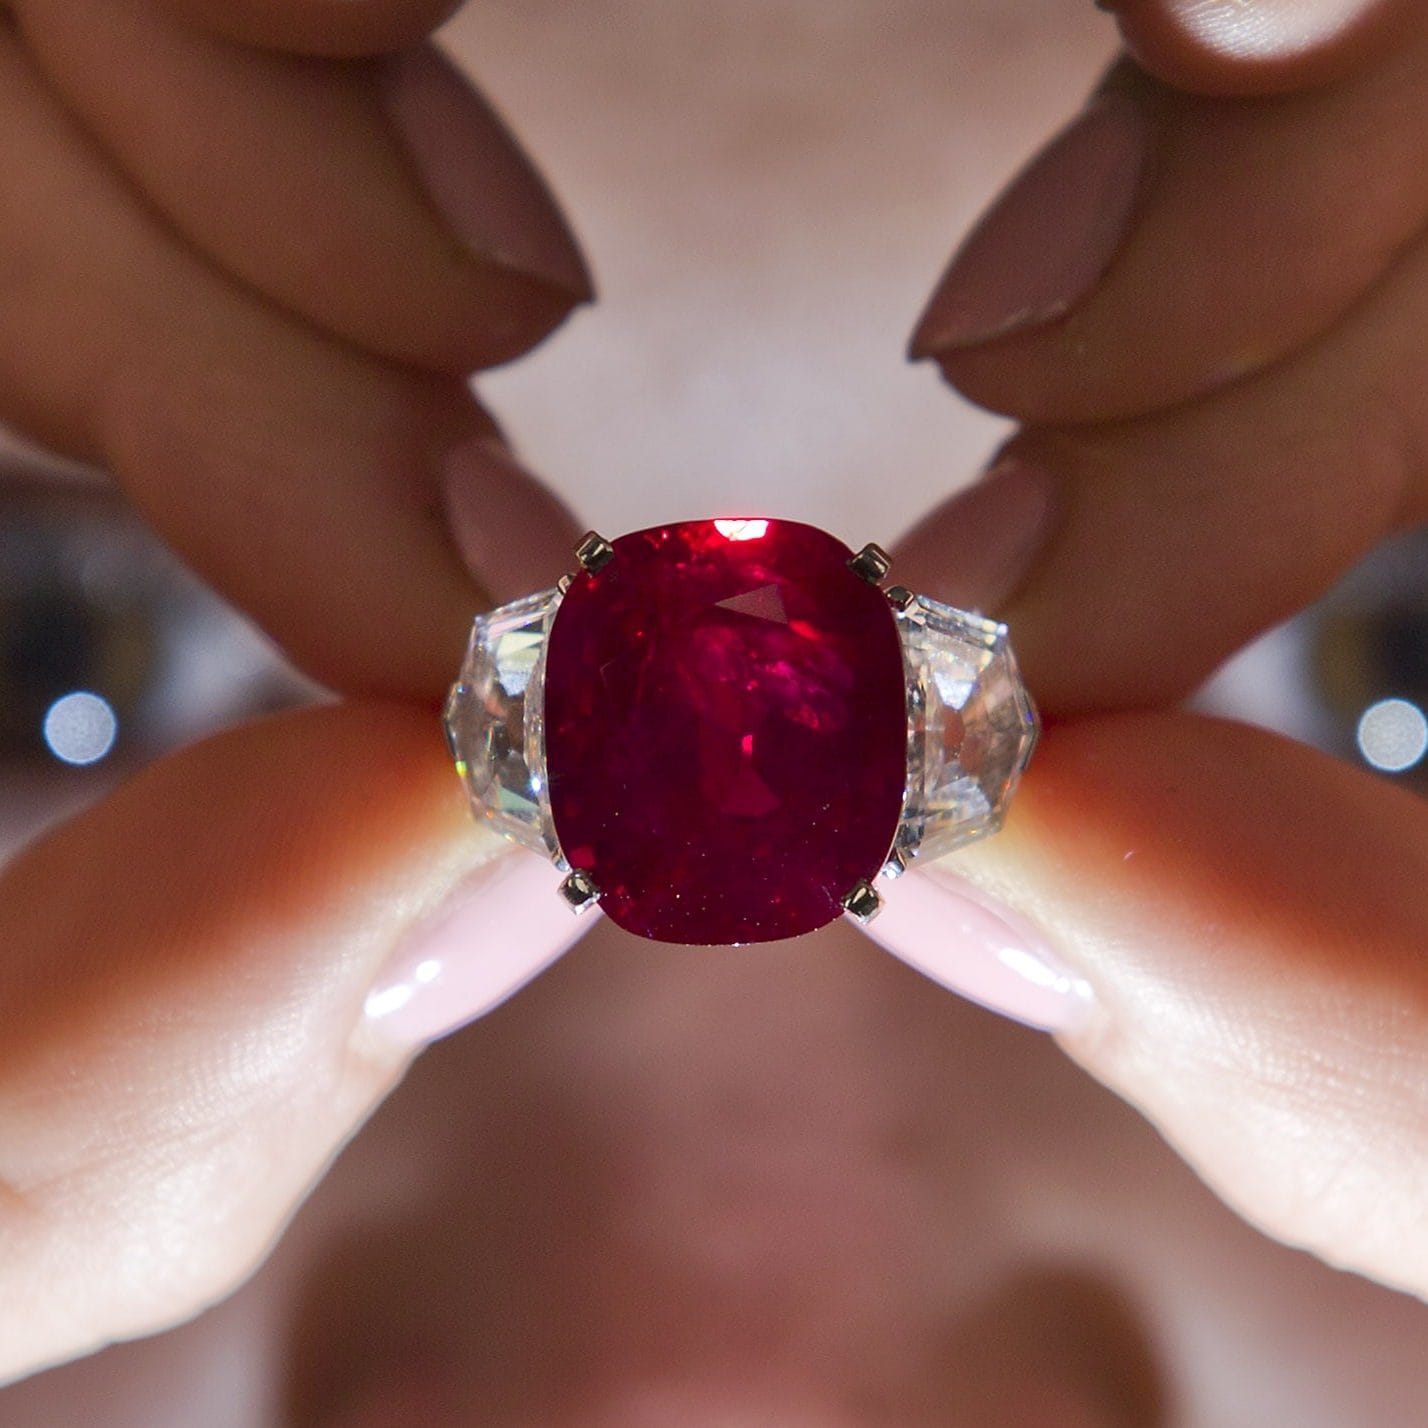 Cartier Sunrise Ruby Ring See veripunane pärl on tõeliselt ainulaadne ja ainulaadne. 2019. aasta oksjonil hinnaks oli 19,6 miljonit naelsterlingit. Suurt ja pilkupüüdvat kalliskivi saadab kaunis teemantide raamistus. Antud juhul on just selle teose haruldus ja kaunis kalliskivi see, mis viib nii märkimisväärse hinnani - sedalaadi rubiinid on nii nõutud, et nende hind tõenäoliselt ka aja jooksul ainult tõuseb.